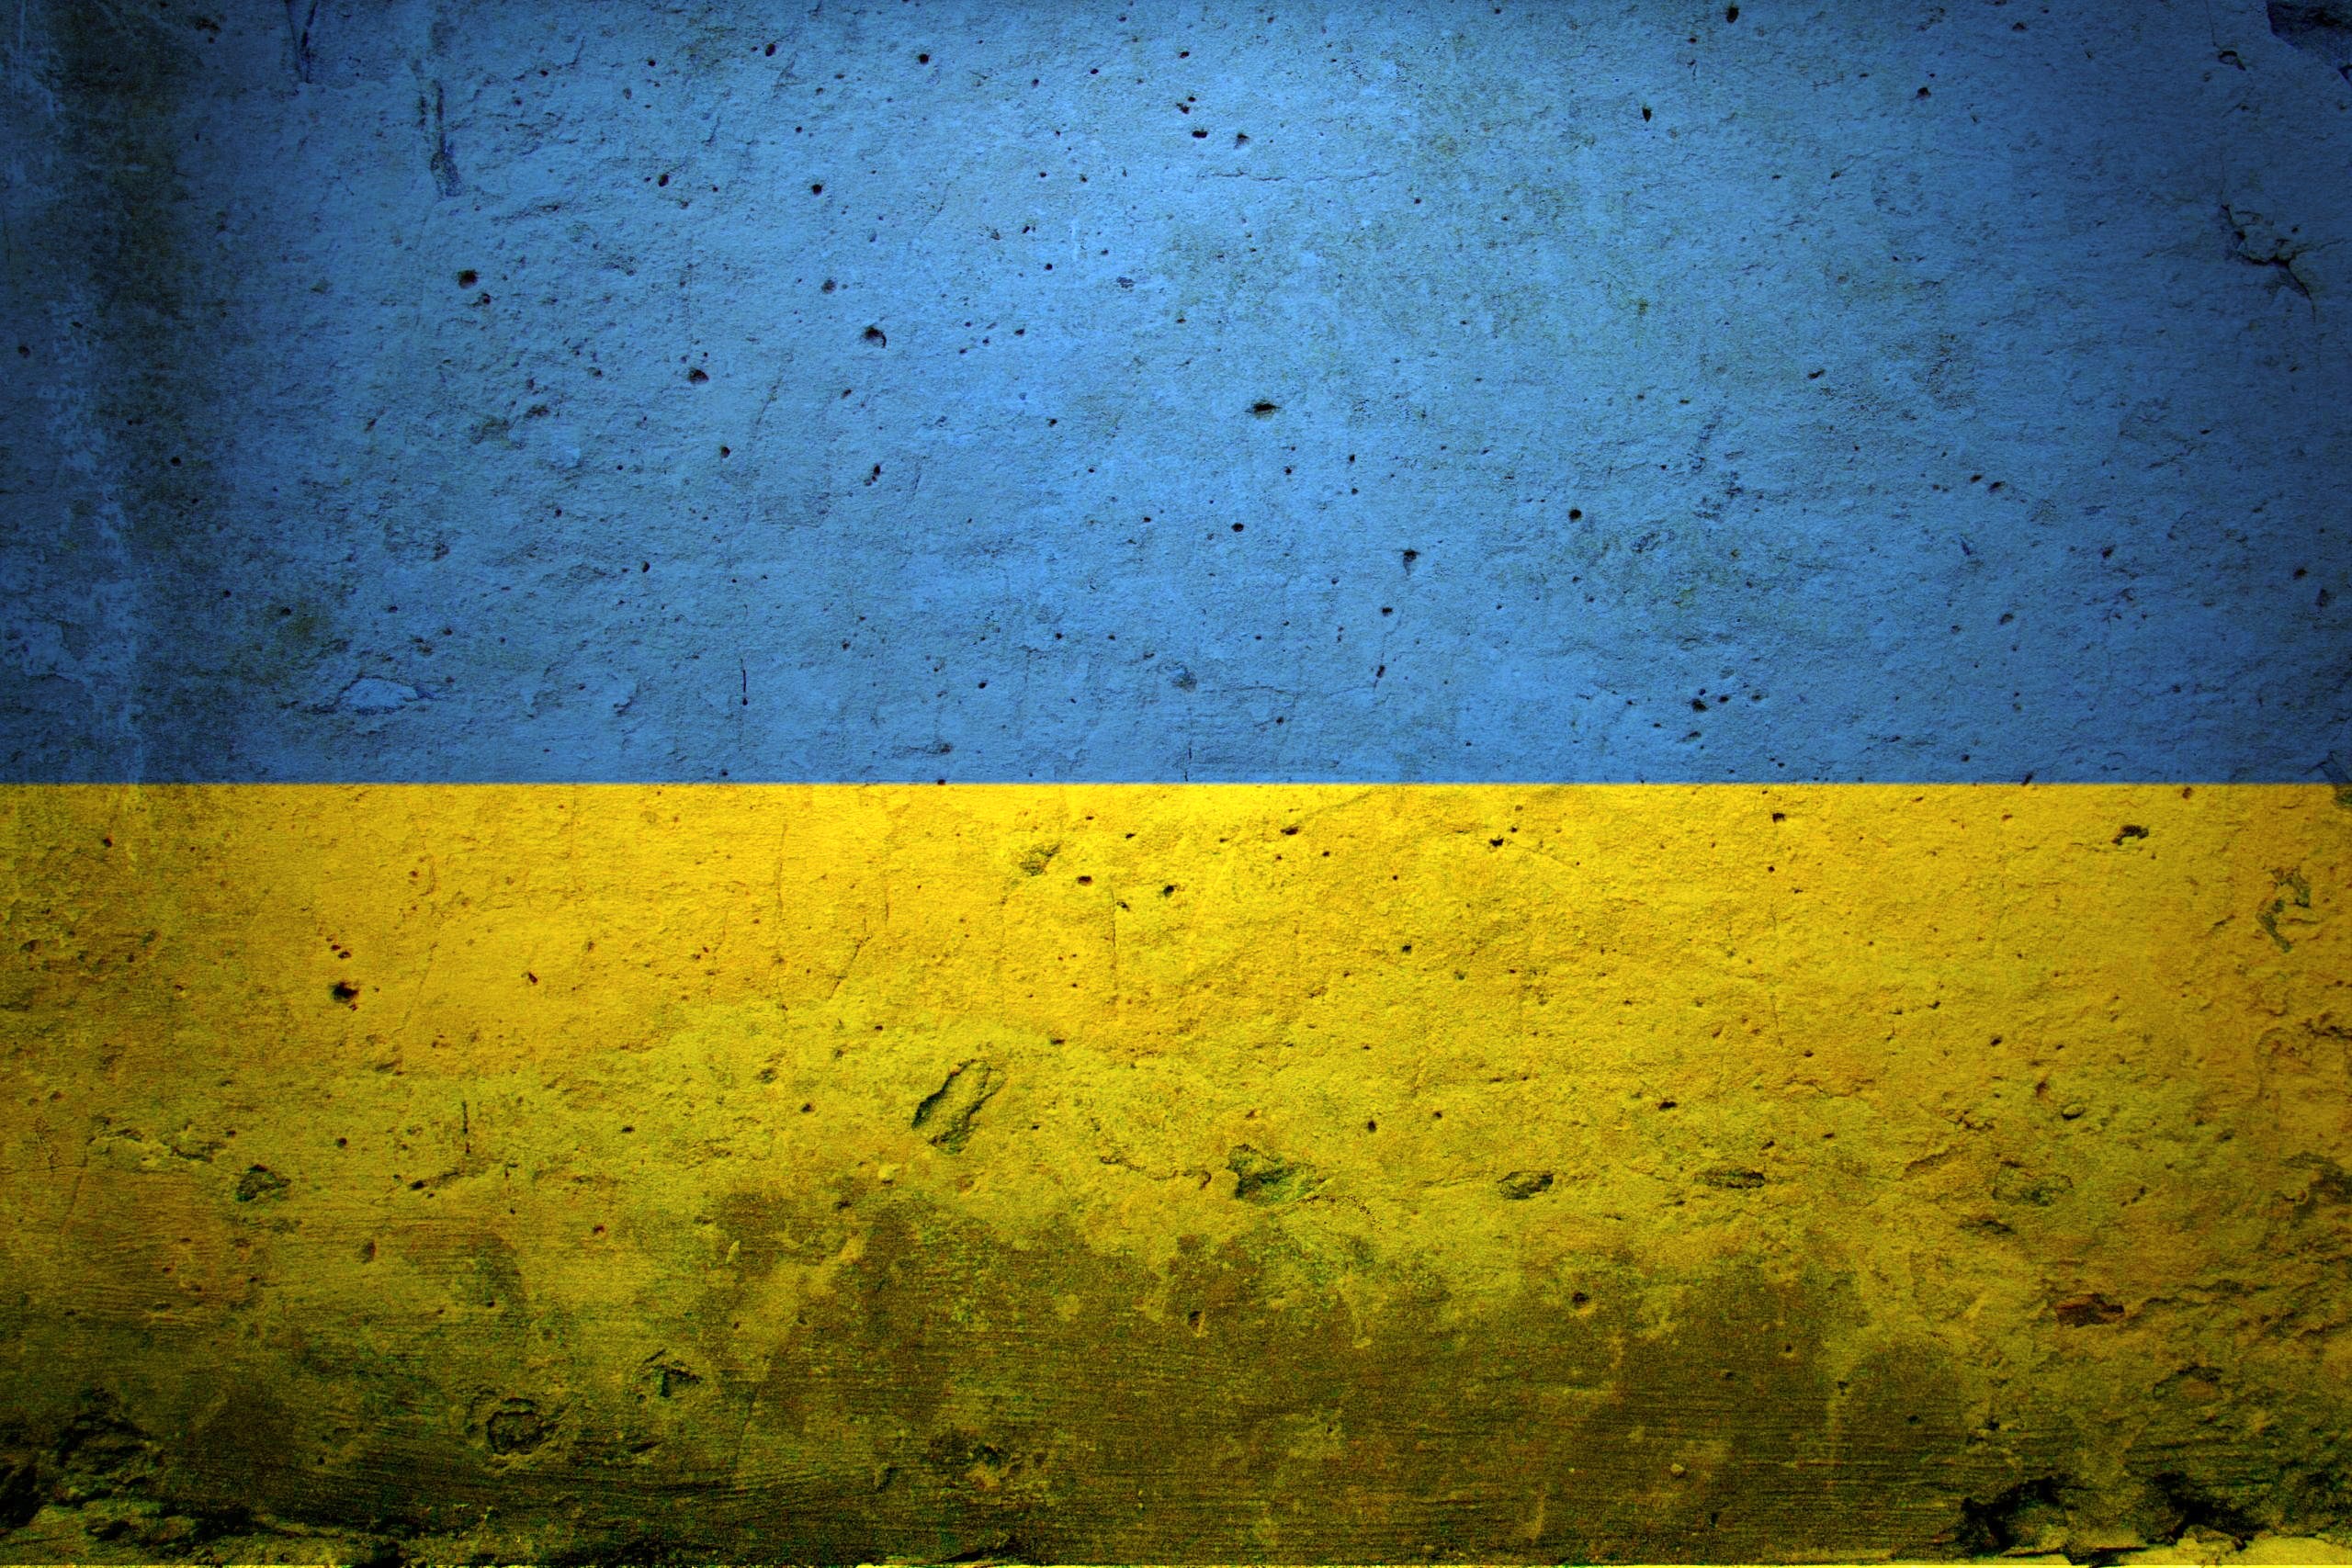 Cầm chiếc điện thoại của mình và đến với những bức hình nền với lá cờ Ukraine lung linh. Những bức hình nền này sẽ giúp bạn thể hiện tình yêu với đất nước Ukraine và làm cho màn hình điện thoại của bạn trở nên sang trọng hơn.